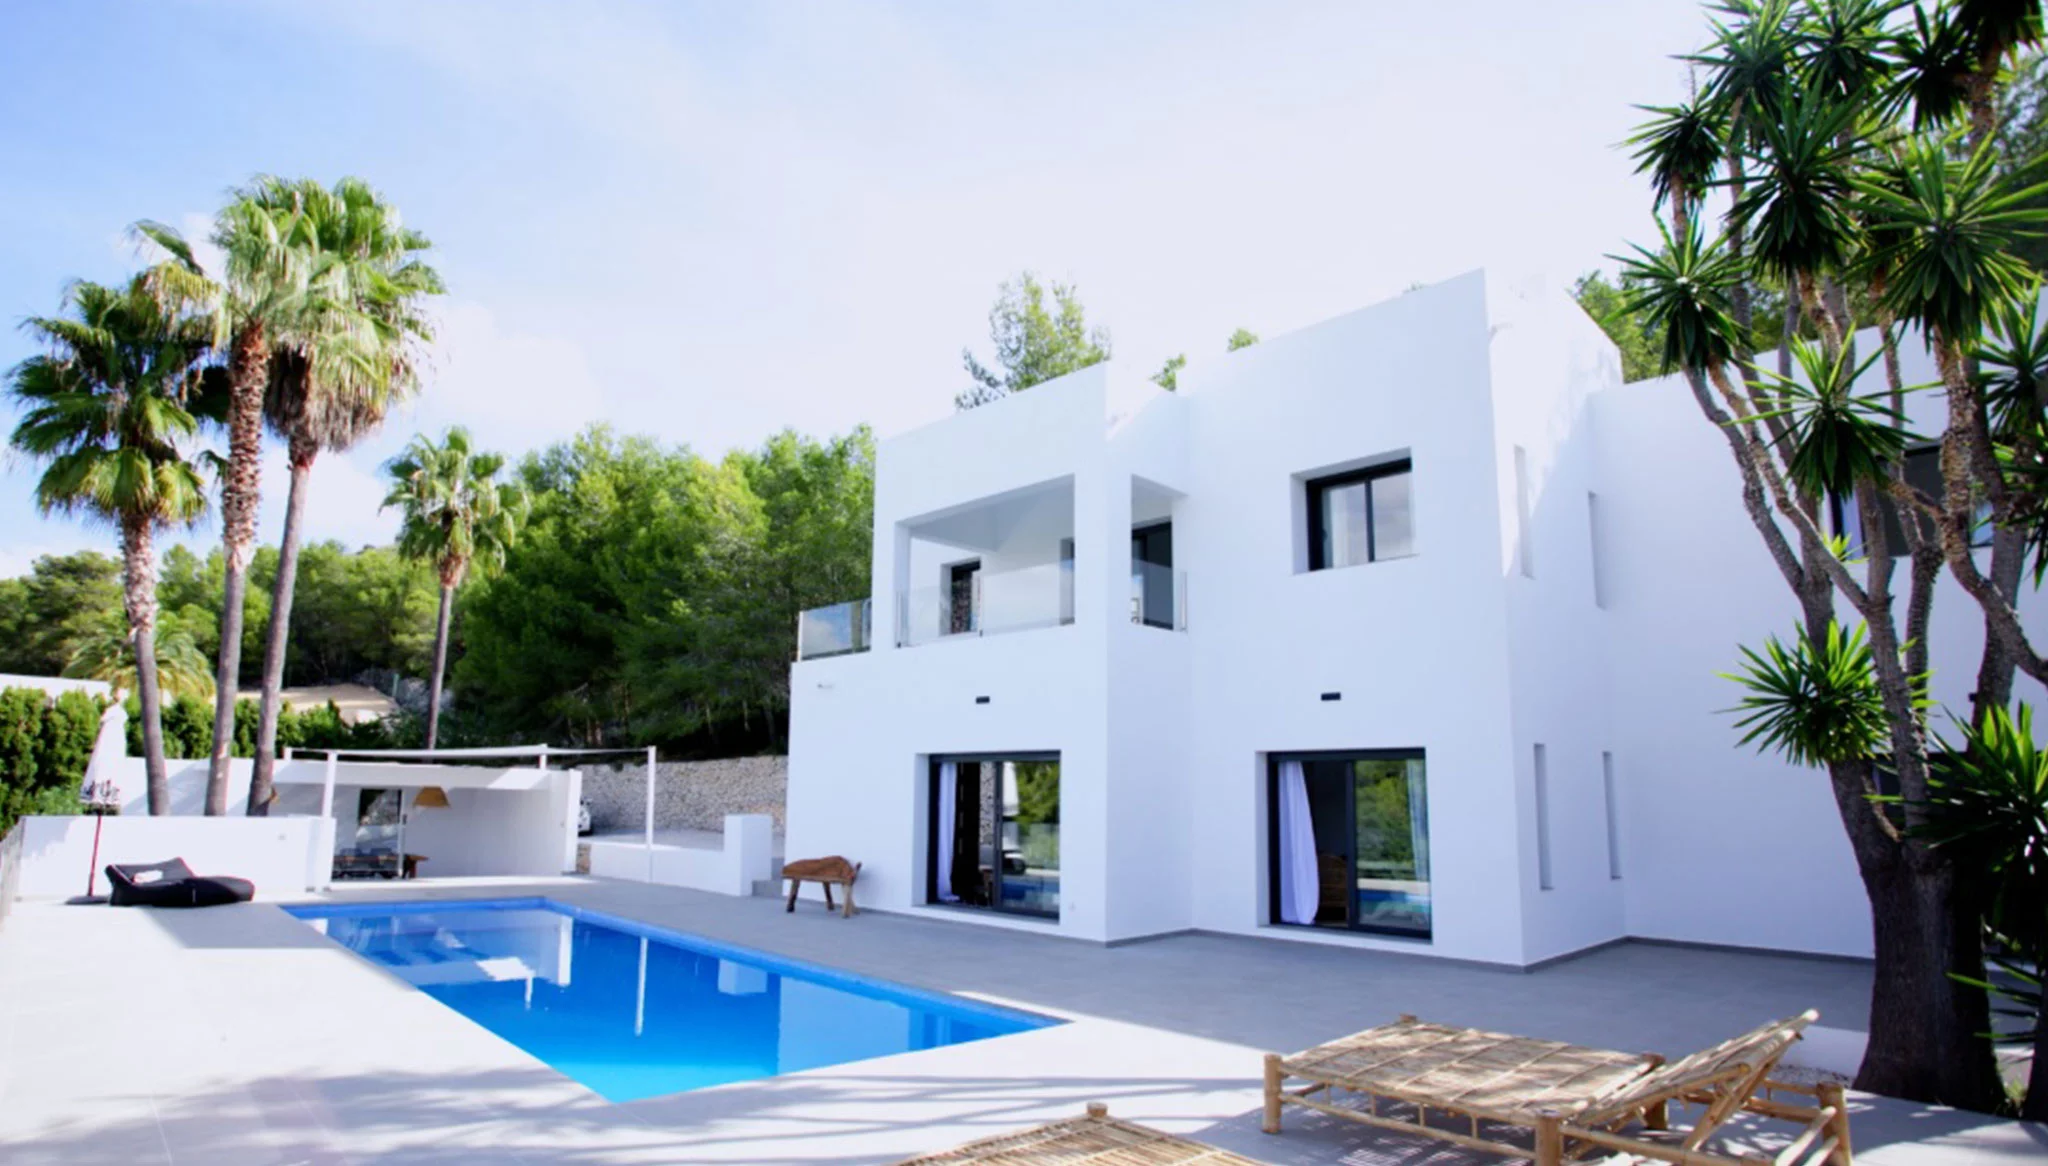 Fachada blanca de una villa de lujo de estilo ibicenco – Fine & Country Costa Blanca Norte